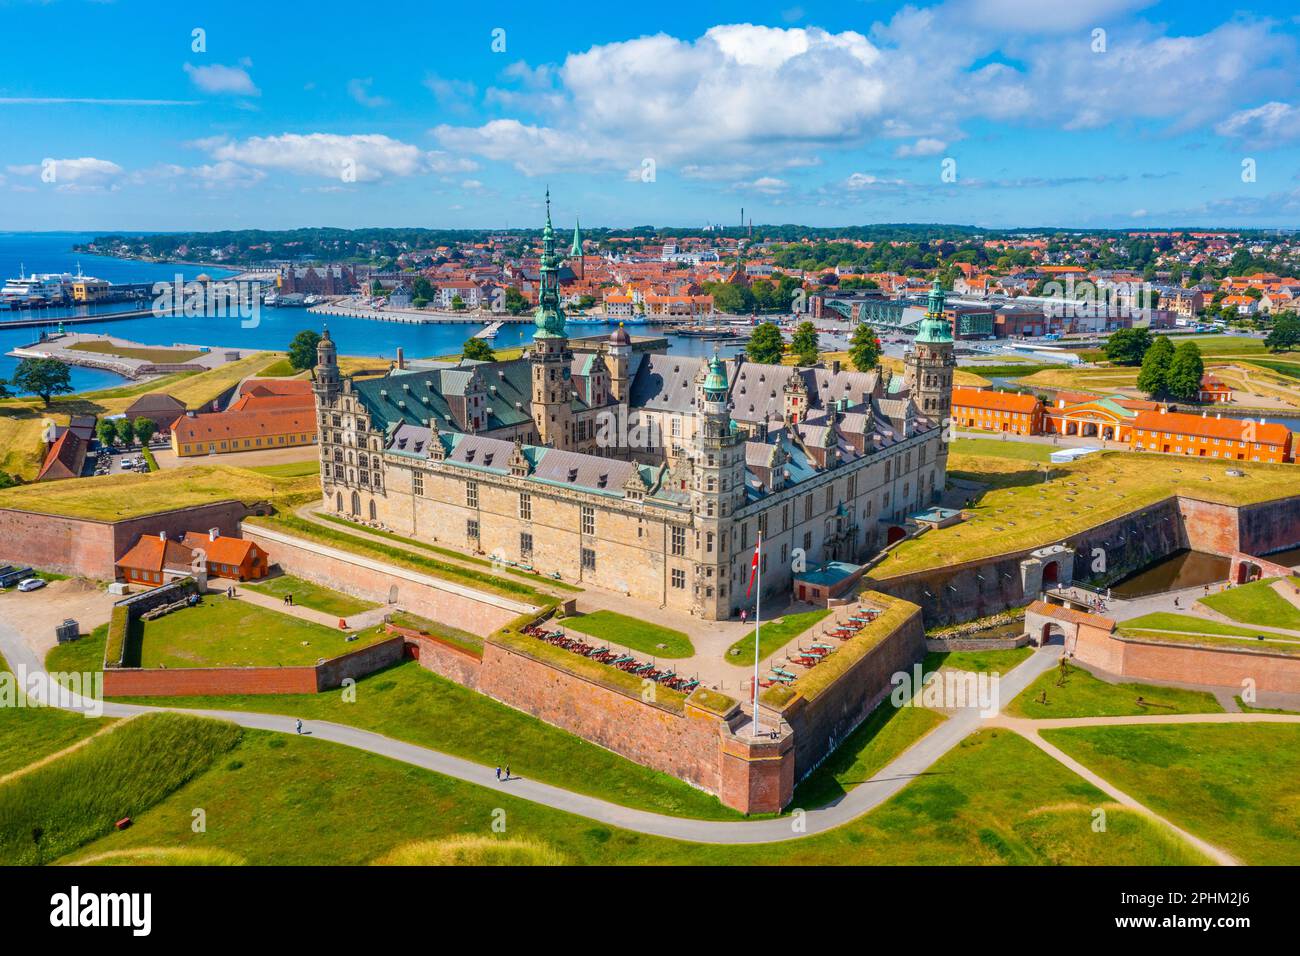 Panorama of the Kronborg castle at Helsingor, Denmark. Stock Photo